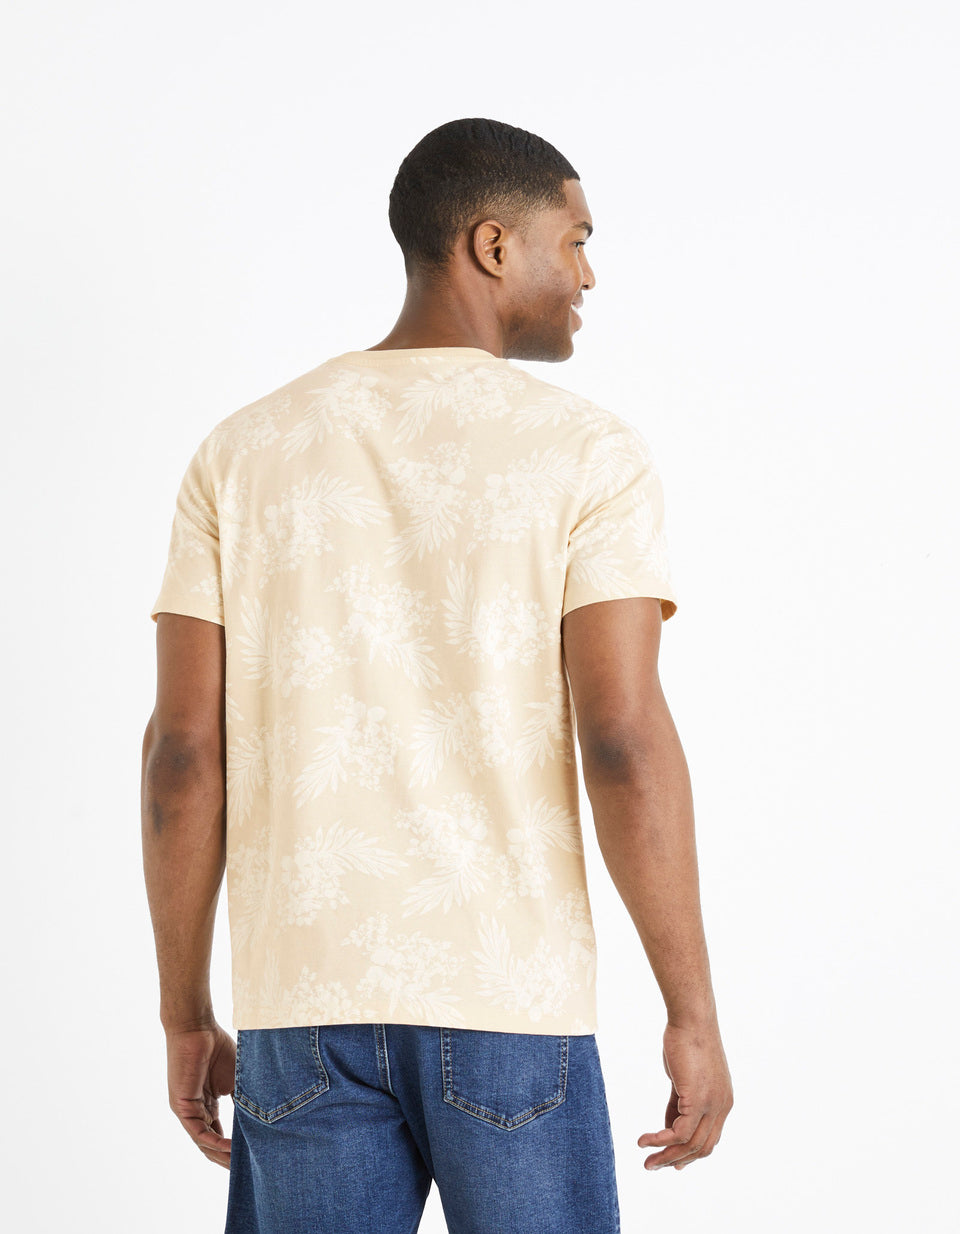 T-Shirt Turtleneck Around 100% Cotton - Beige - 03